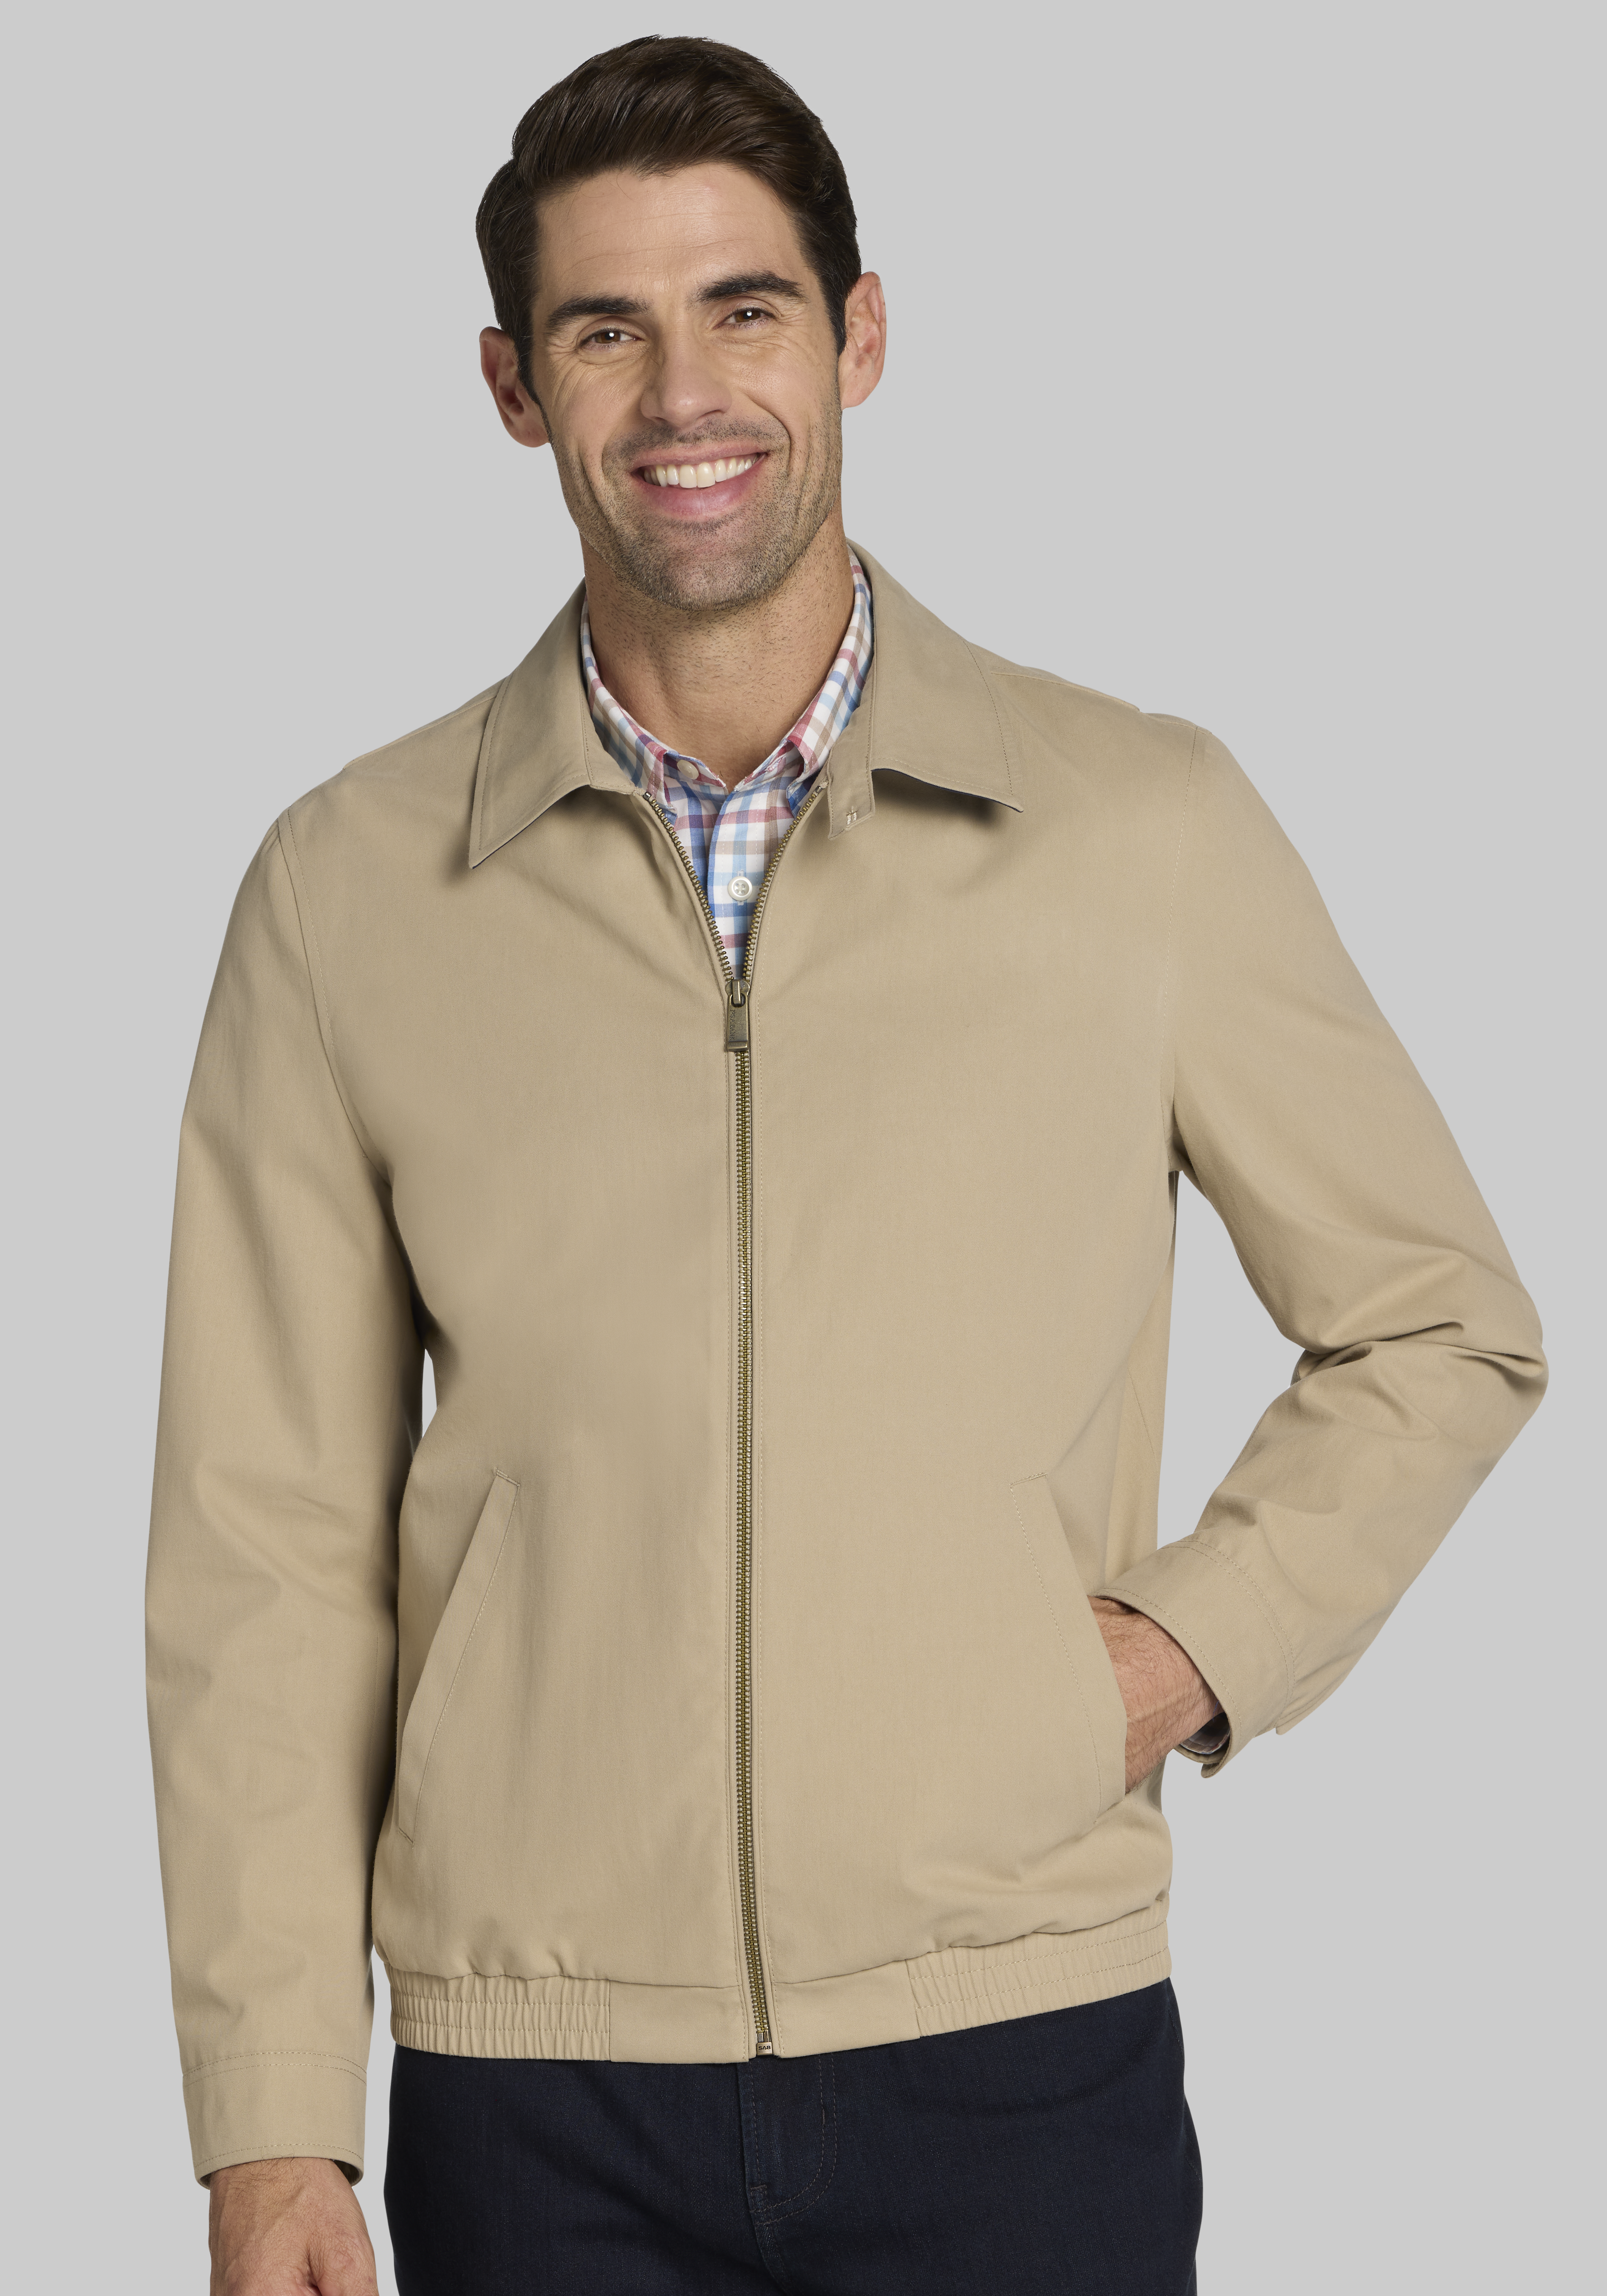 Men's Tan Big & Tall Jackets, Coats, & Vests